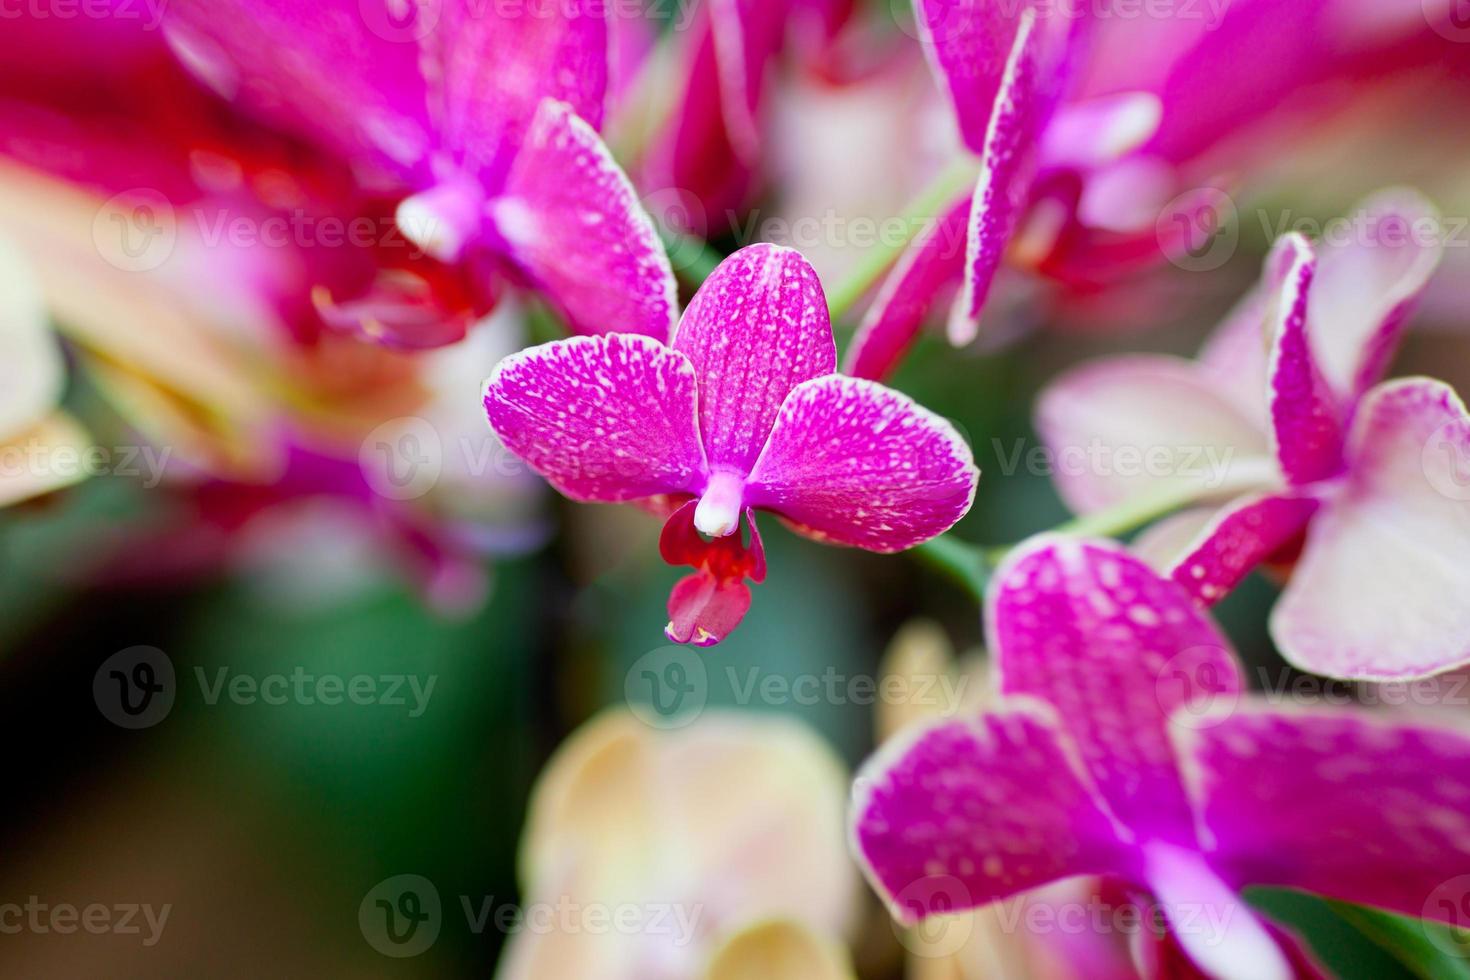 flores de orquídea rosa em fundo de folhas foto